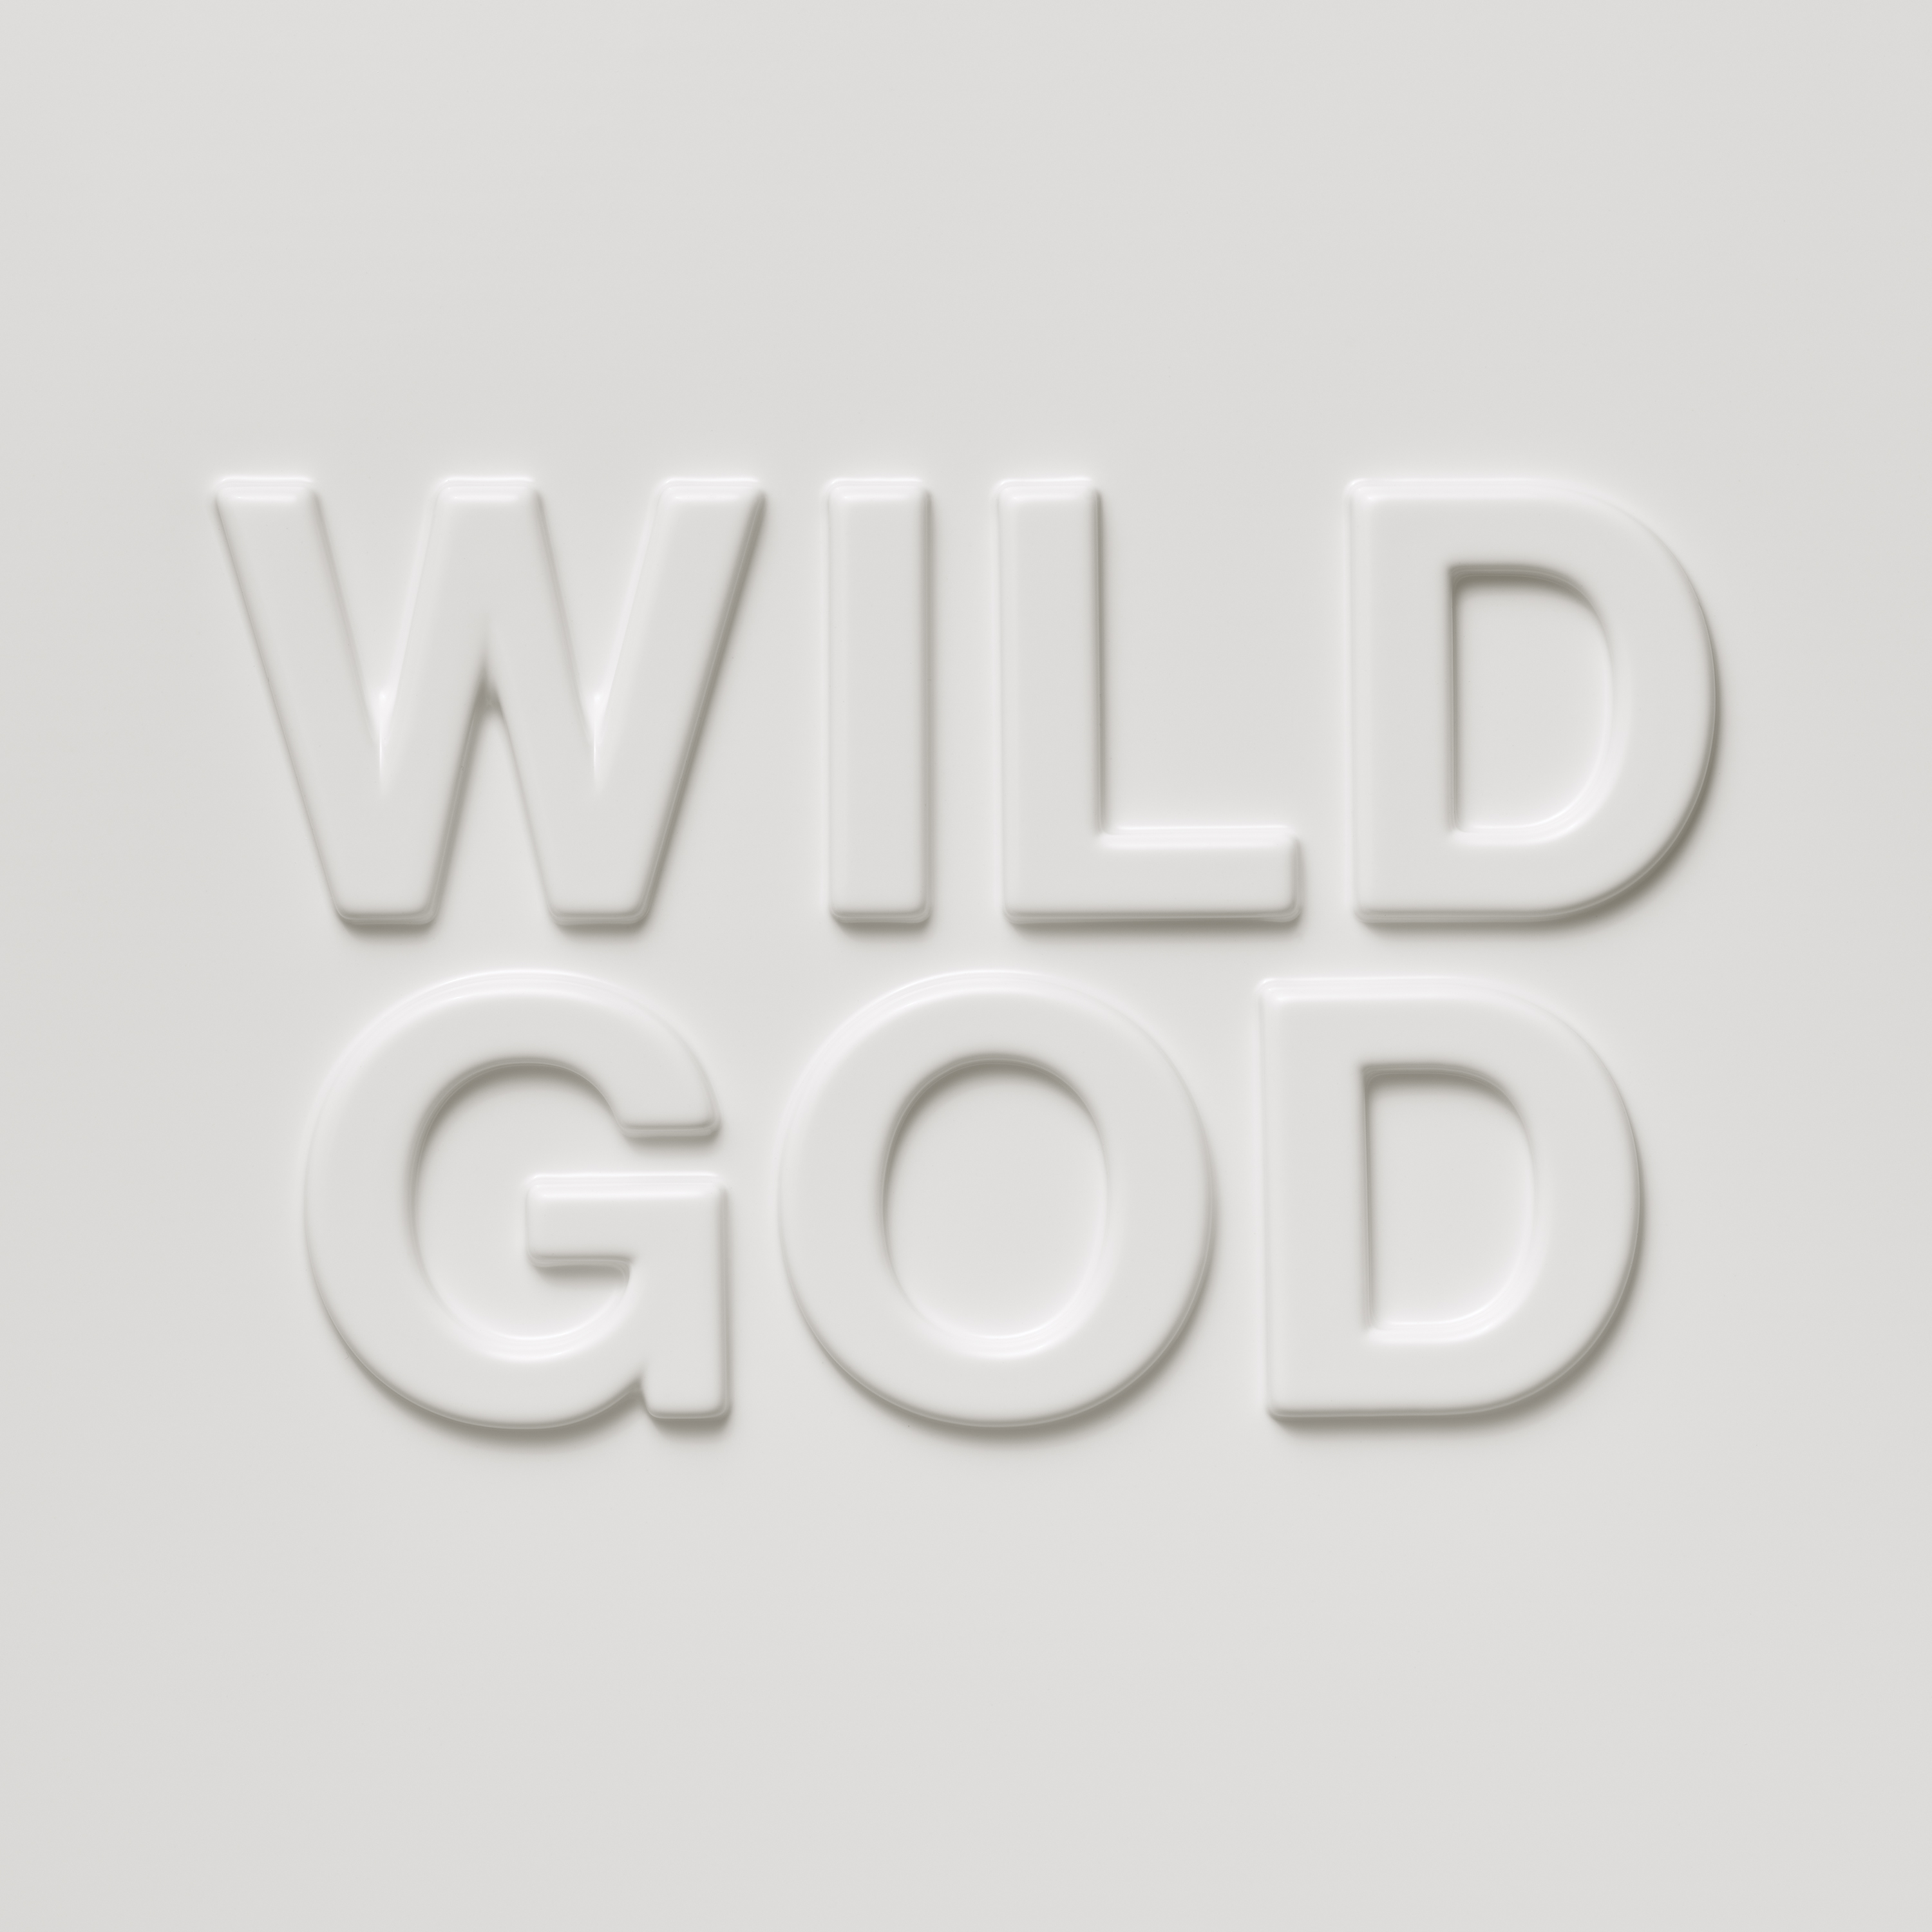 Wild God cover art